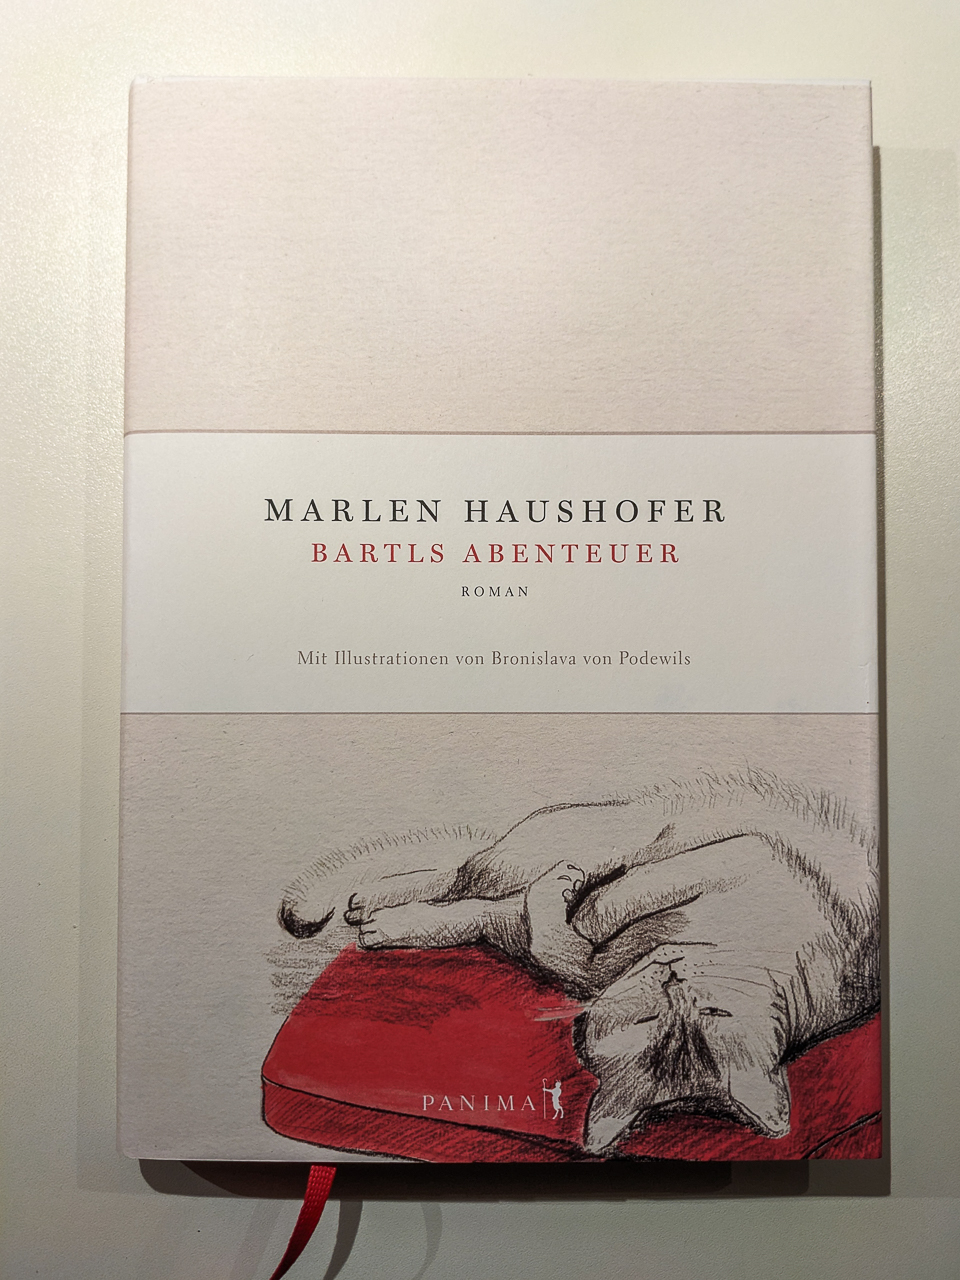 Marlen Haushofer - Bartls Abenteuer (Panima Verlag)